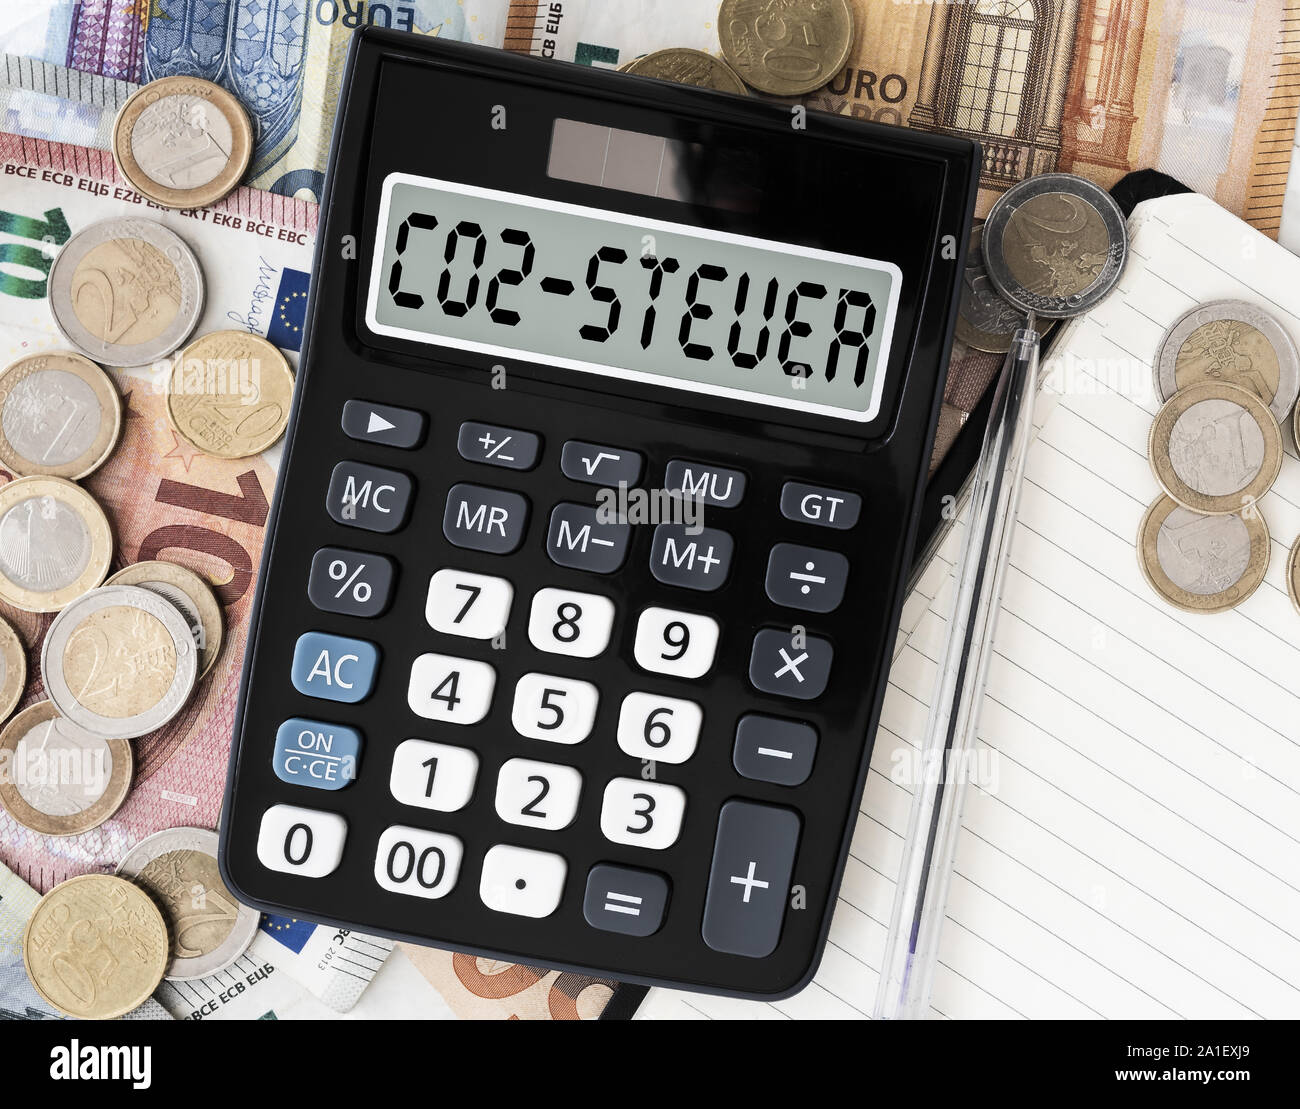 Close-up of CO2 Steuer, texte en allemand, pour taxe carbone, sur l'écran de calculatrice de poche contre l'introduction des billets sur la table Banque D'Images